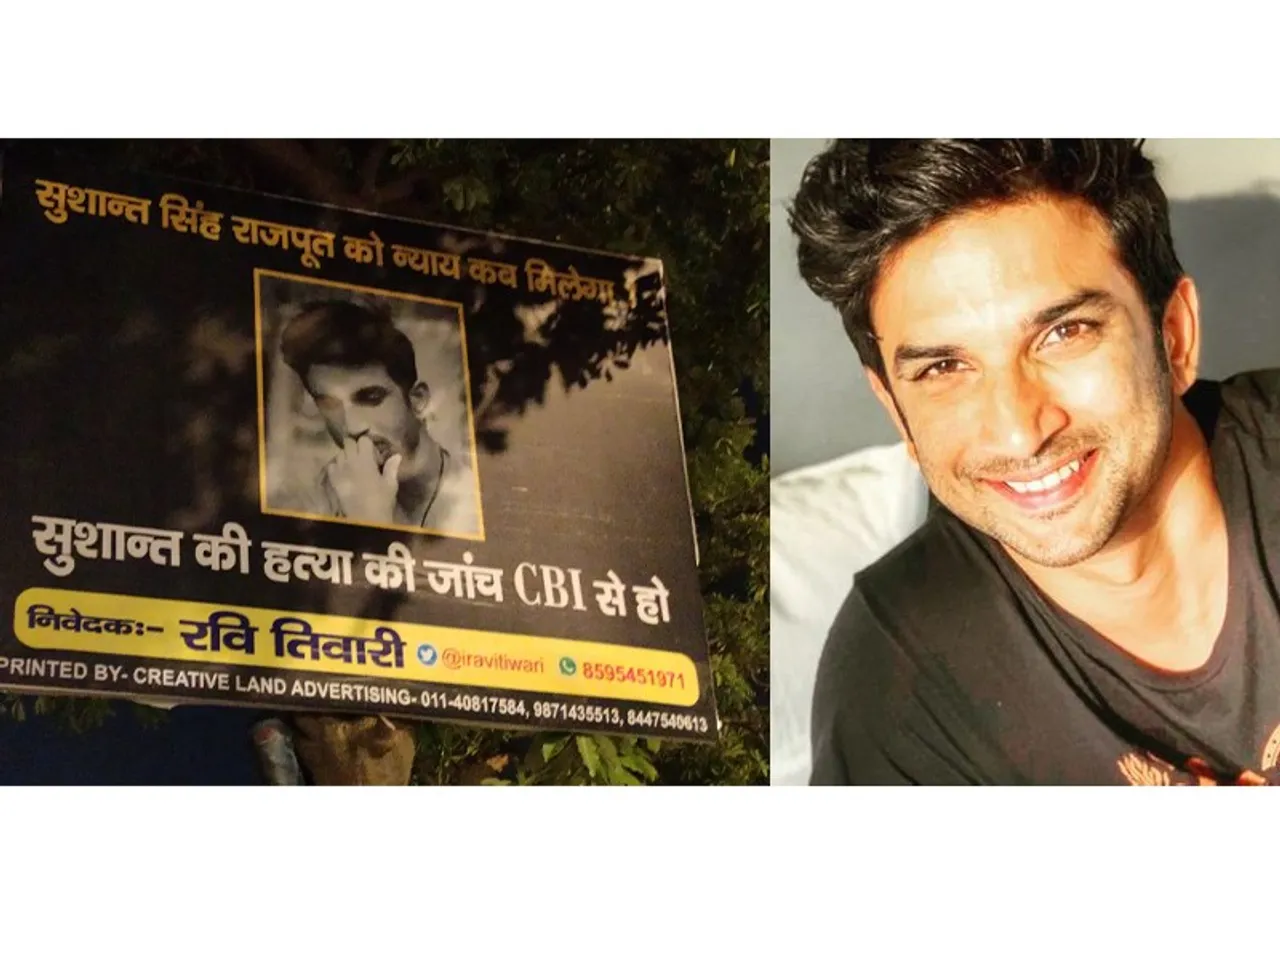 सुशांत सिंह राजपूत सुसाइड मामले में दिल्ली में कई जगह लगे पोस्टर, फैंस कर रहे सीबीआई जांच की मांग